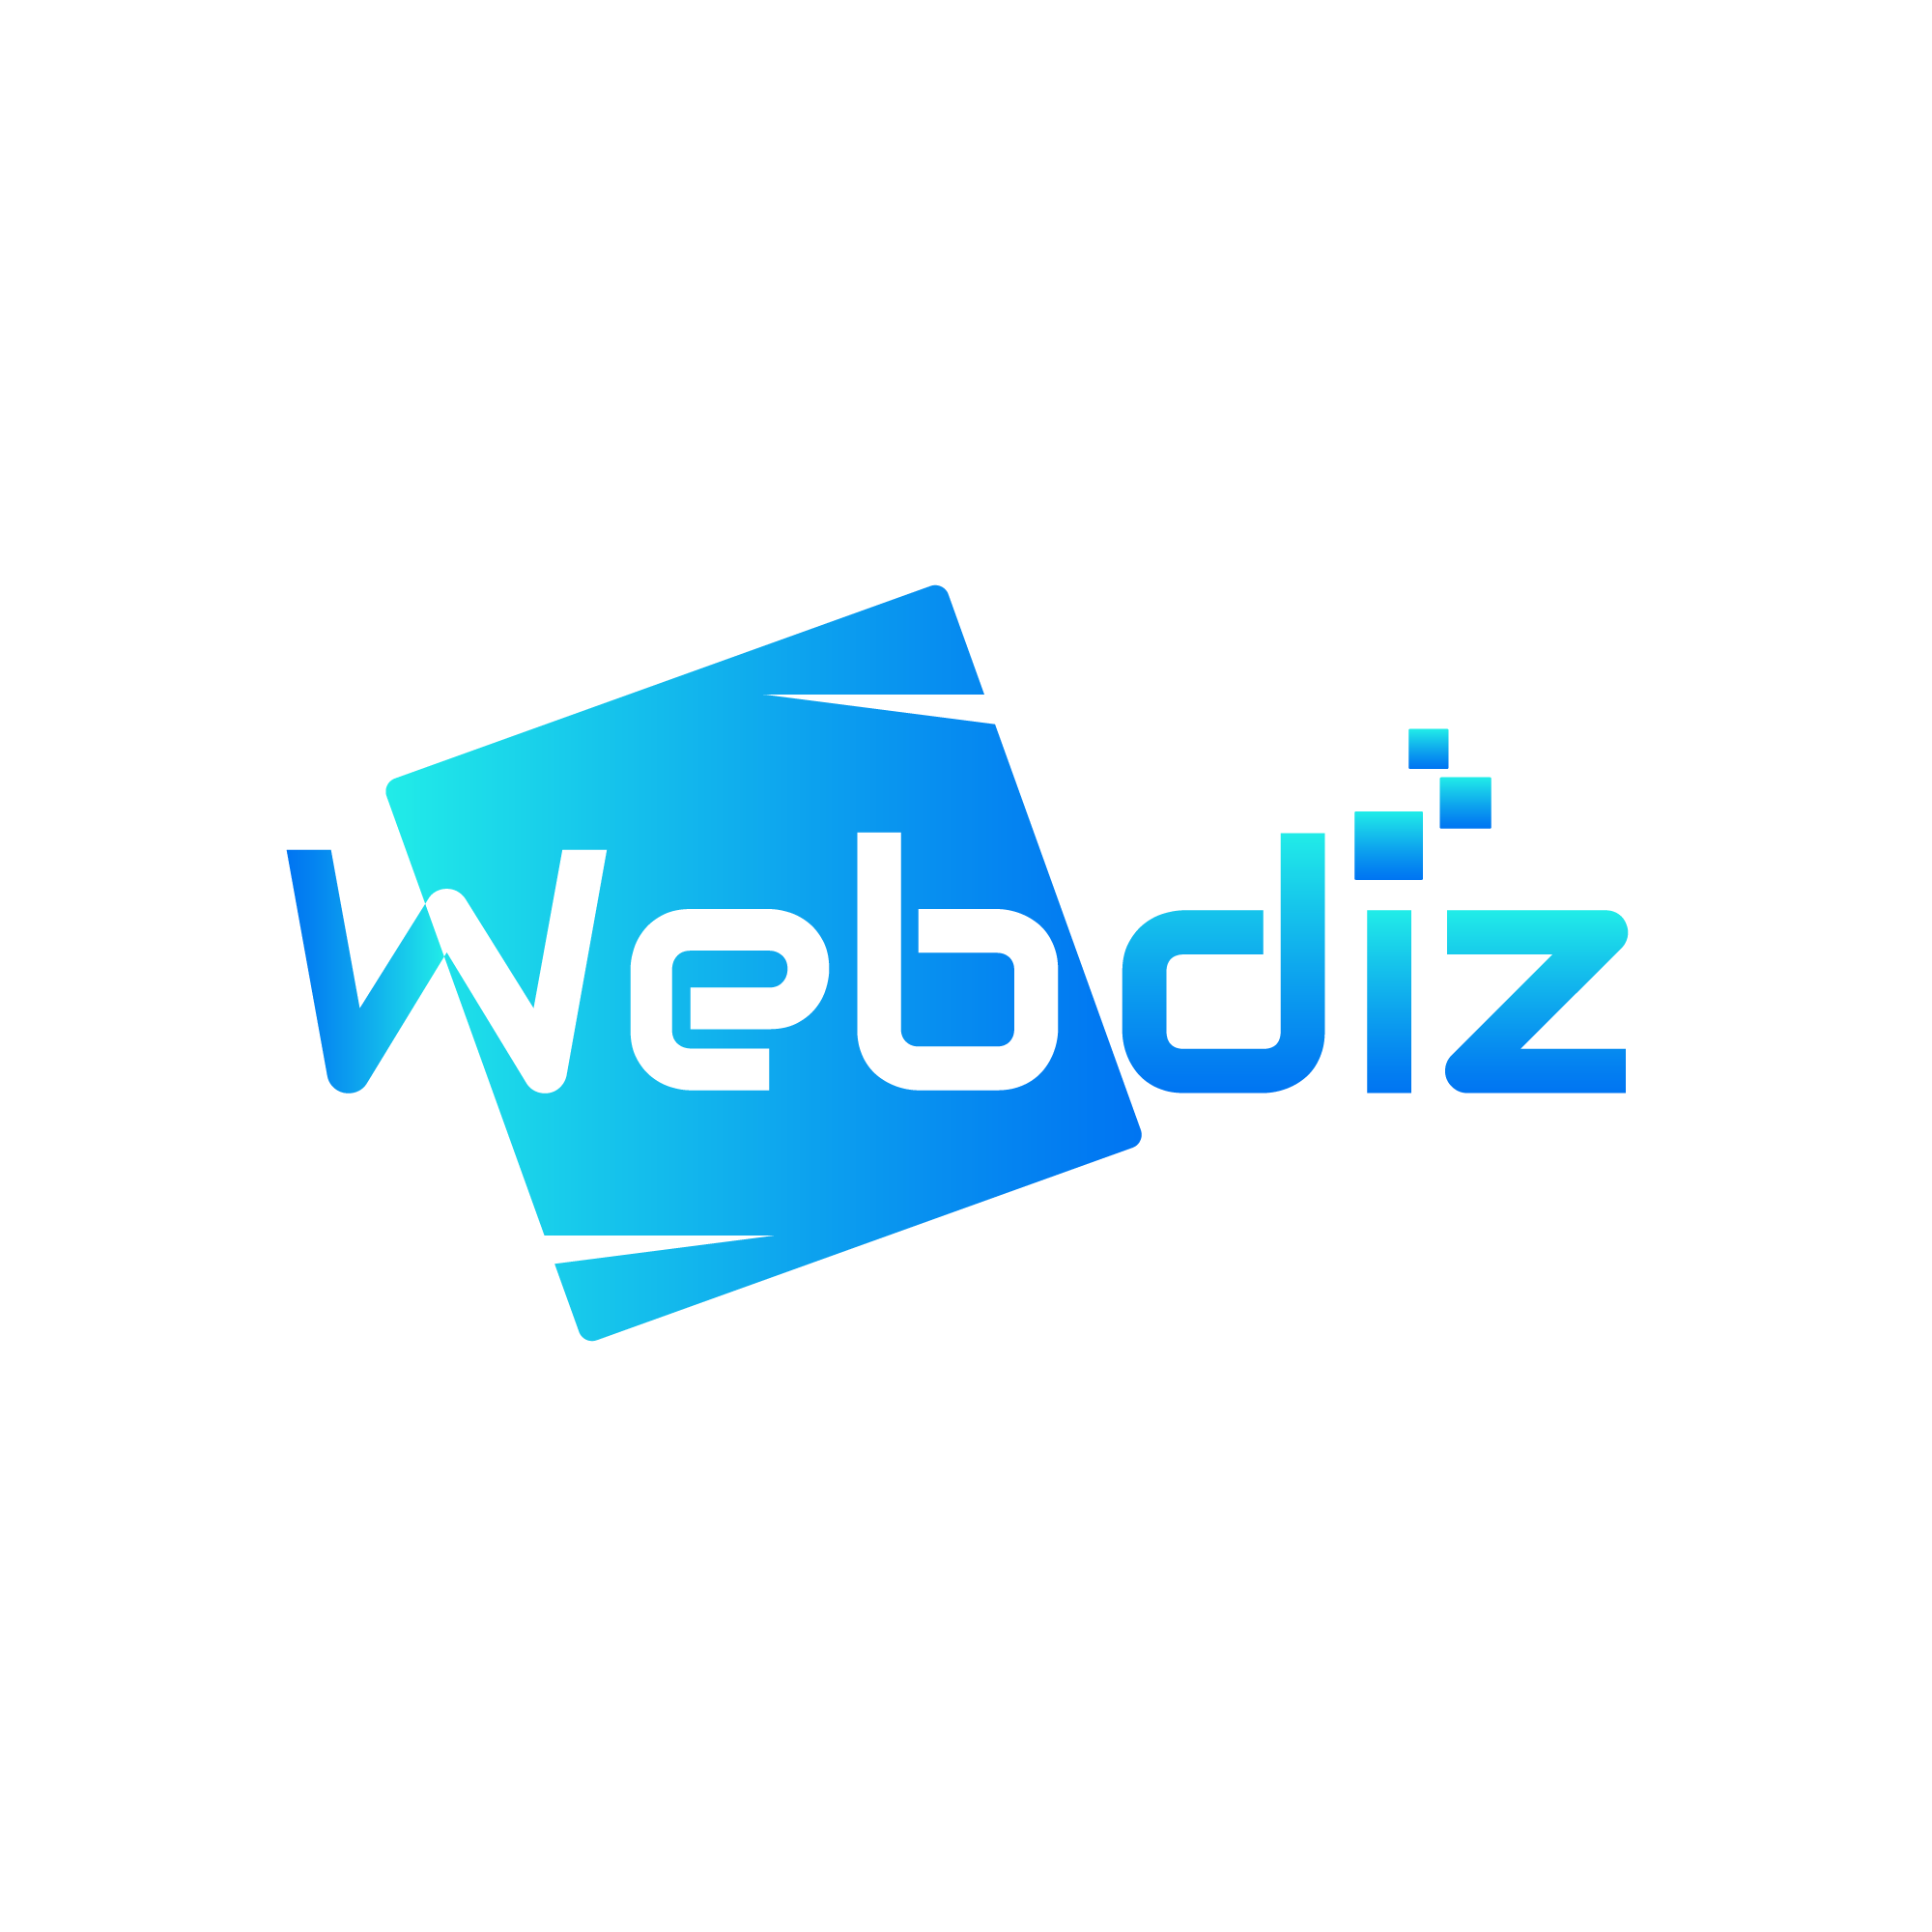 Webdiz